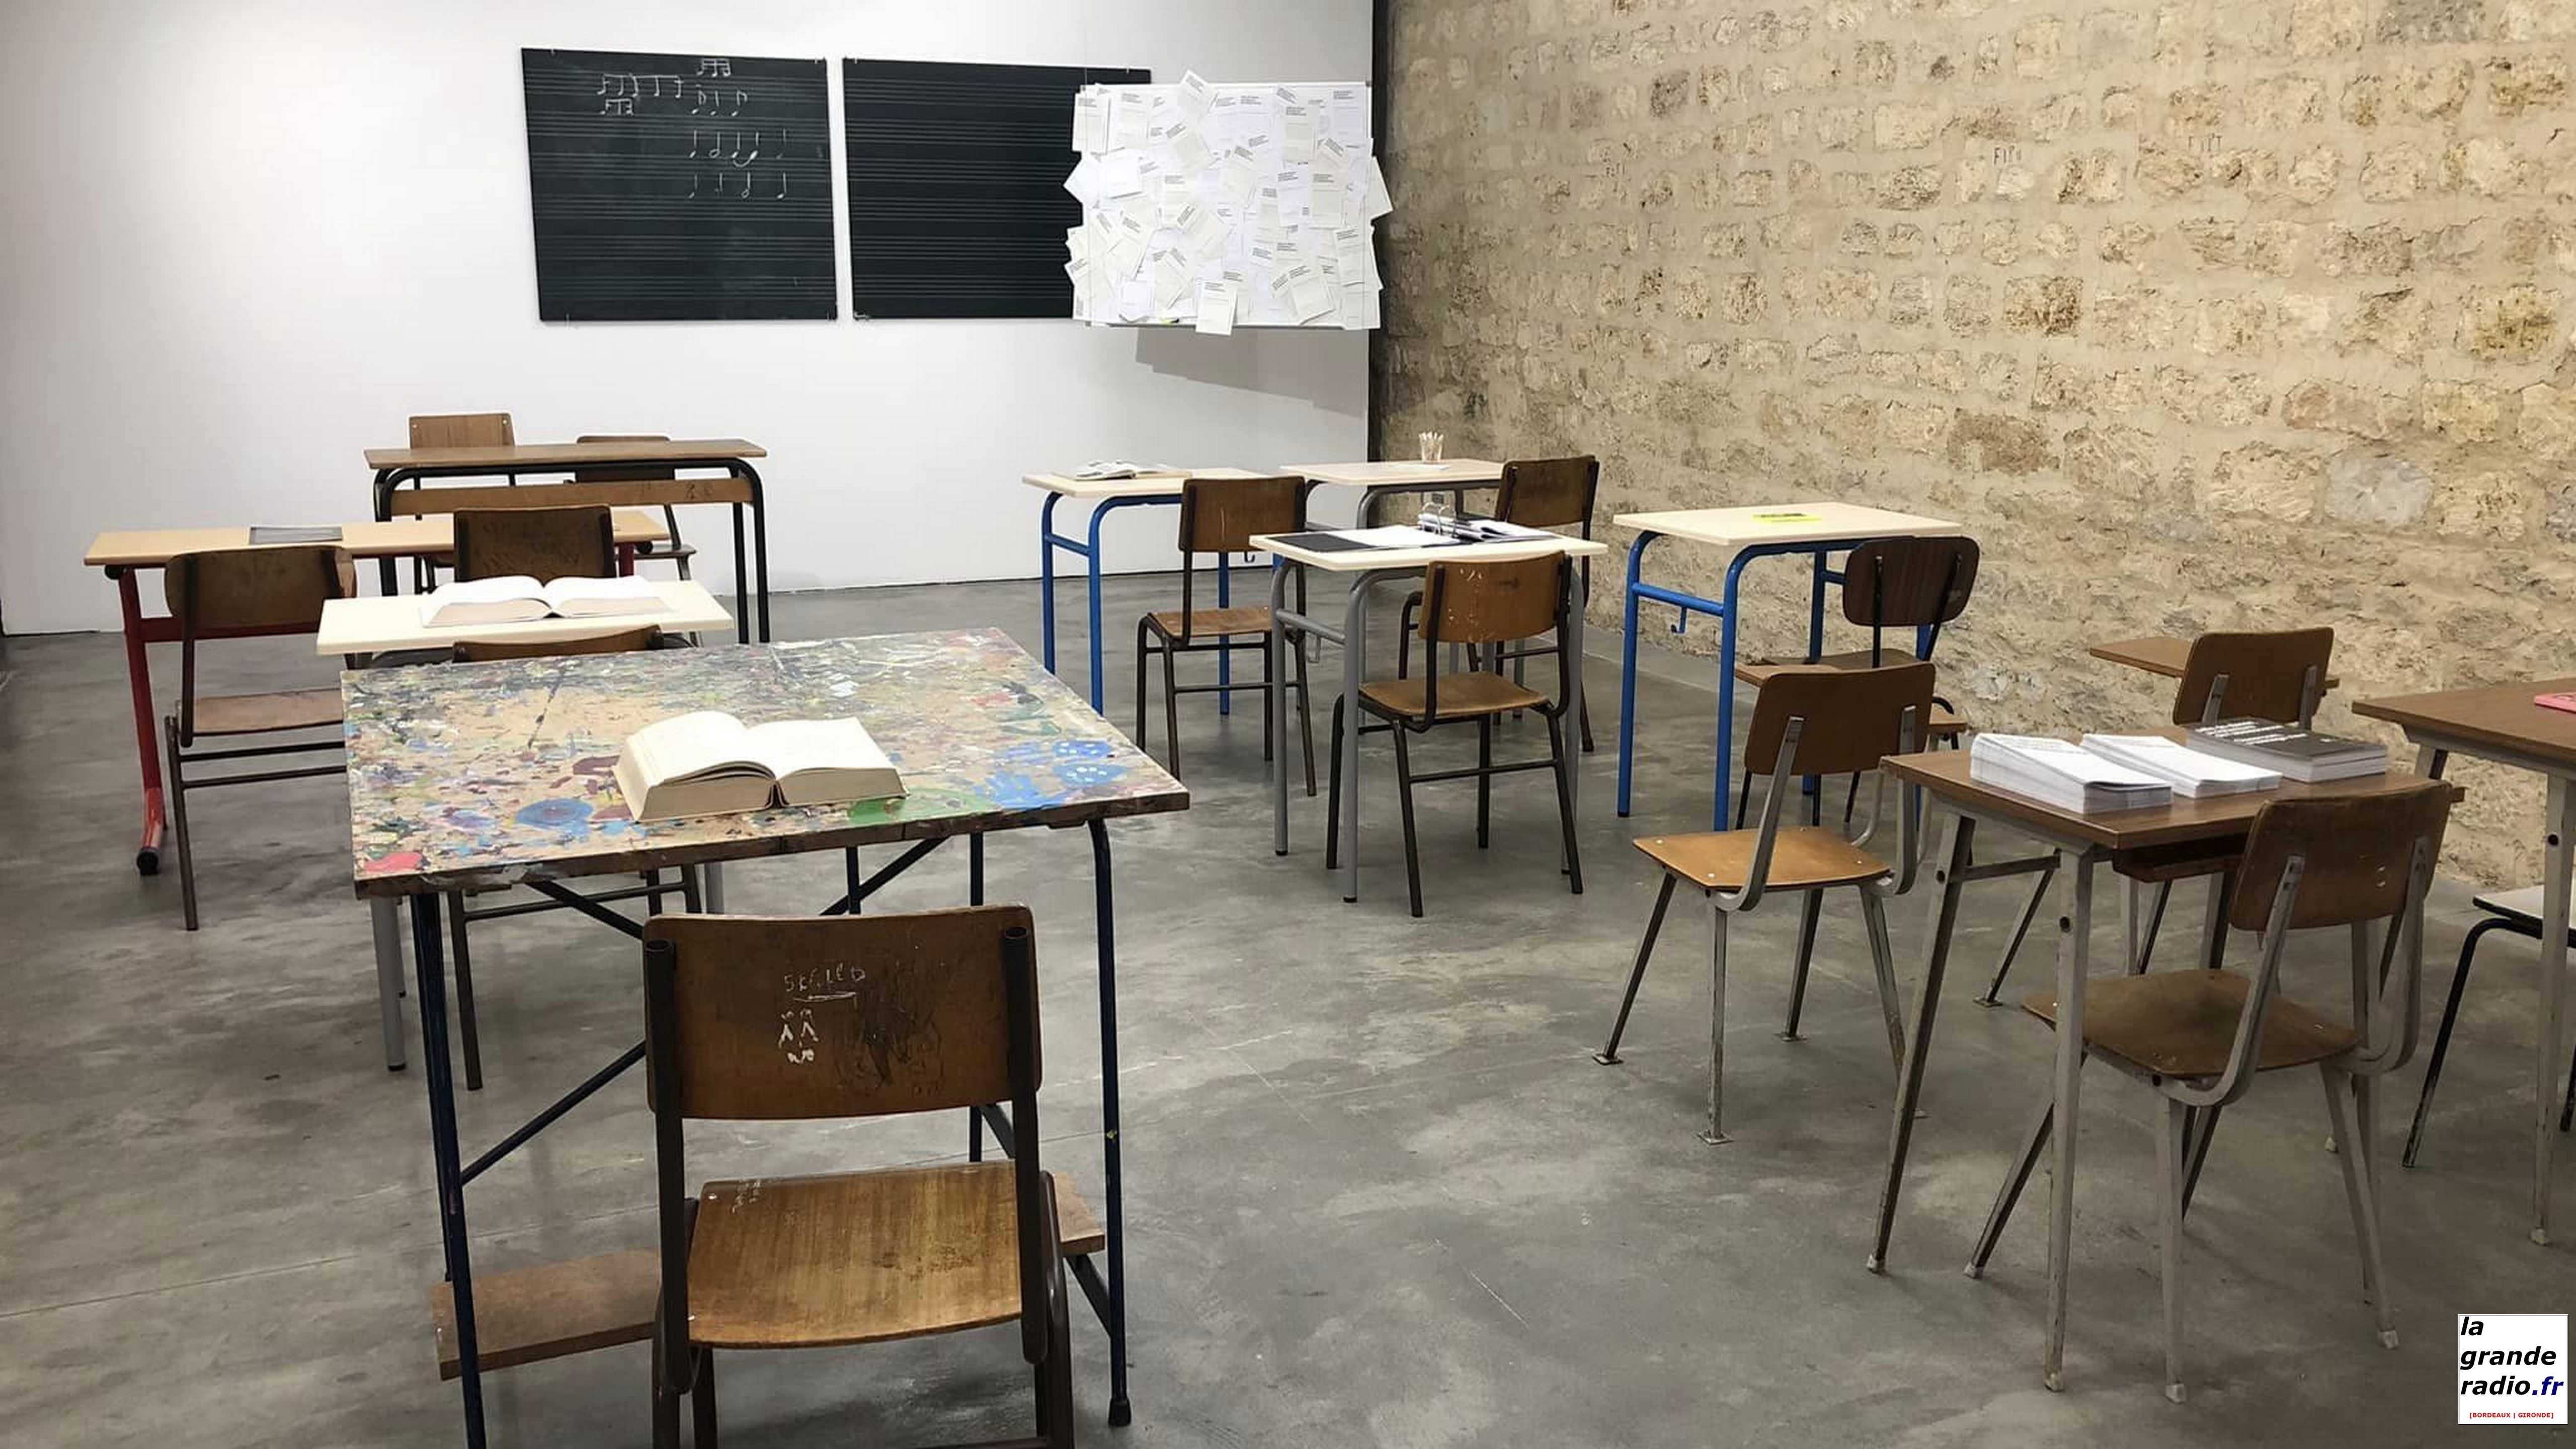 Bordeaux : "Salle de classe, architecture de l’adolescence", une exposition à arc en rêve, centre d'architecture